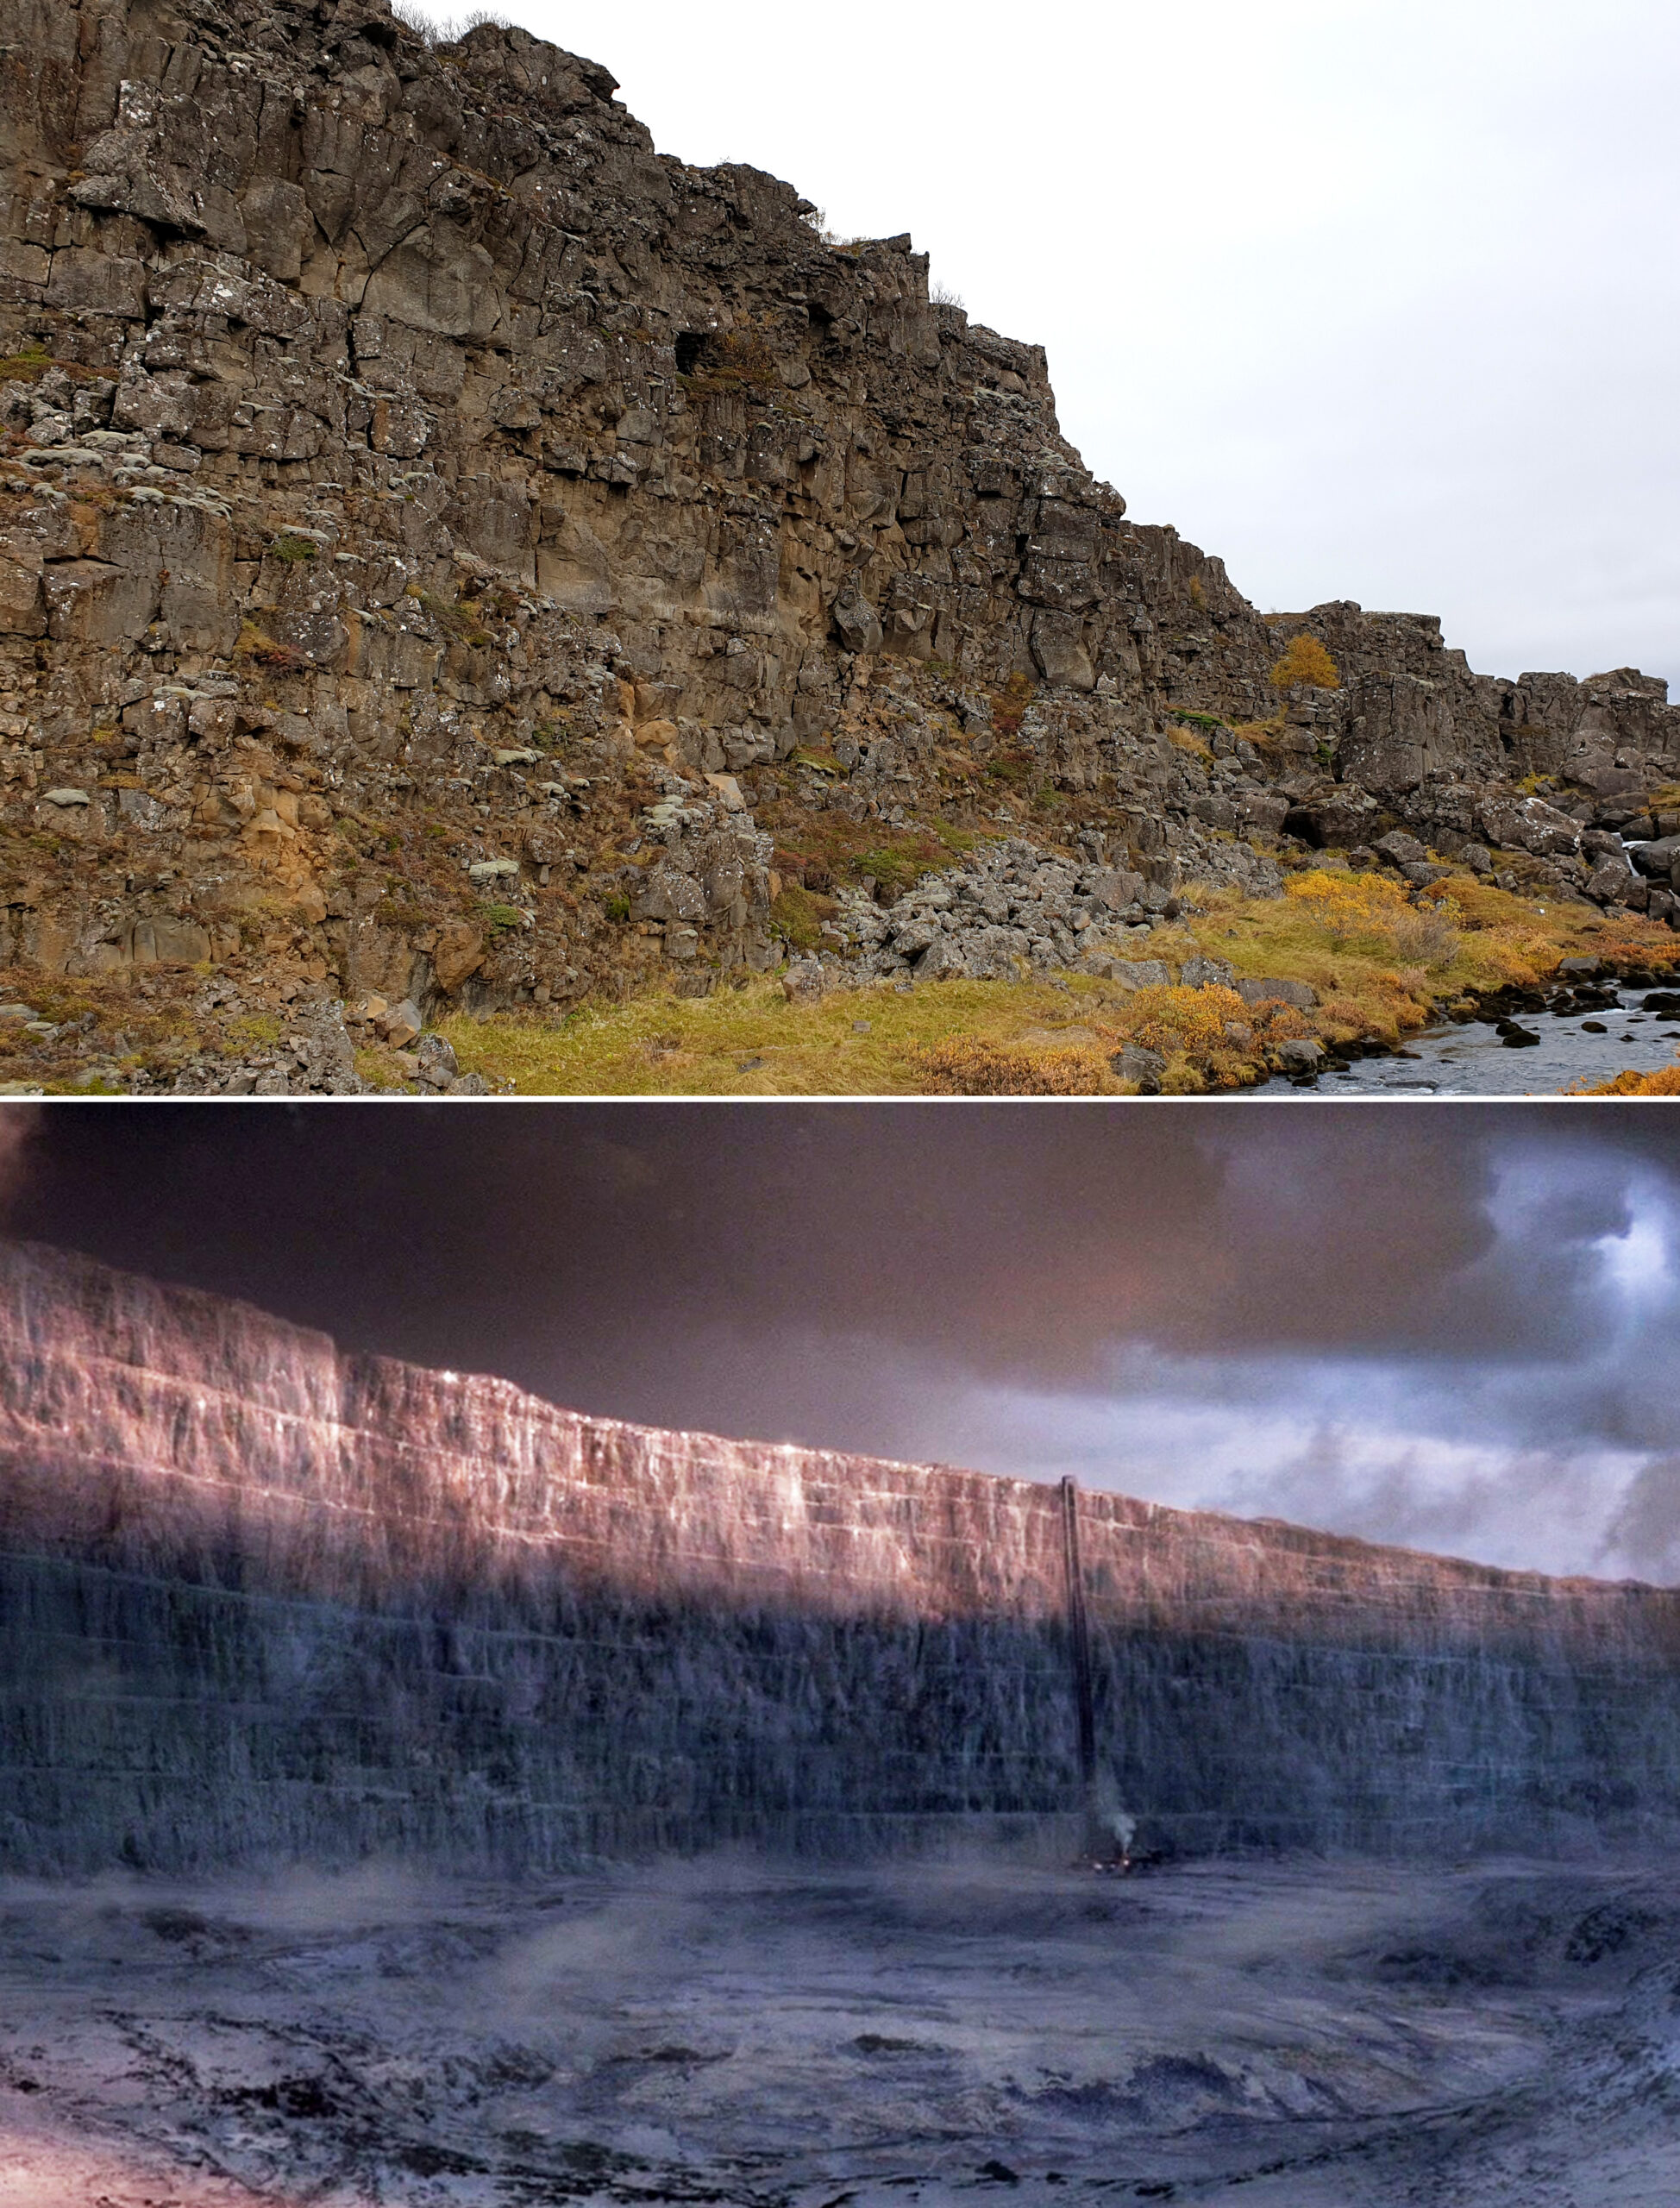 Nella foto si vede una parete di Roccia nel parco di thingvellir, sovrapposta ad una immagina nella Barriera di Game of Thrones